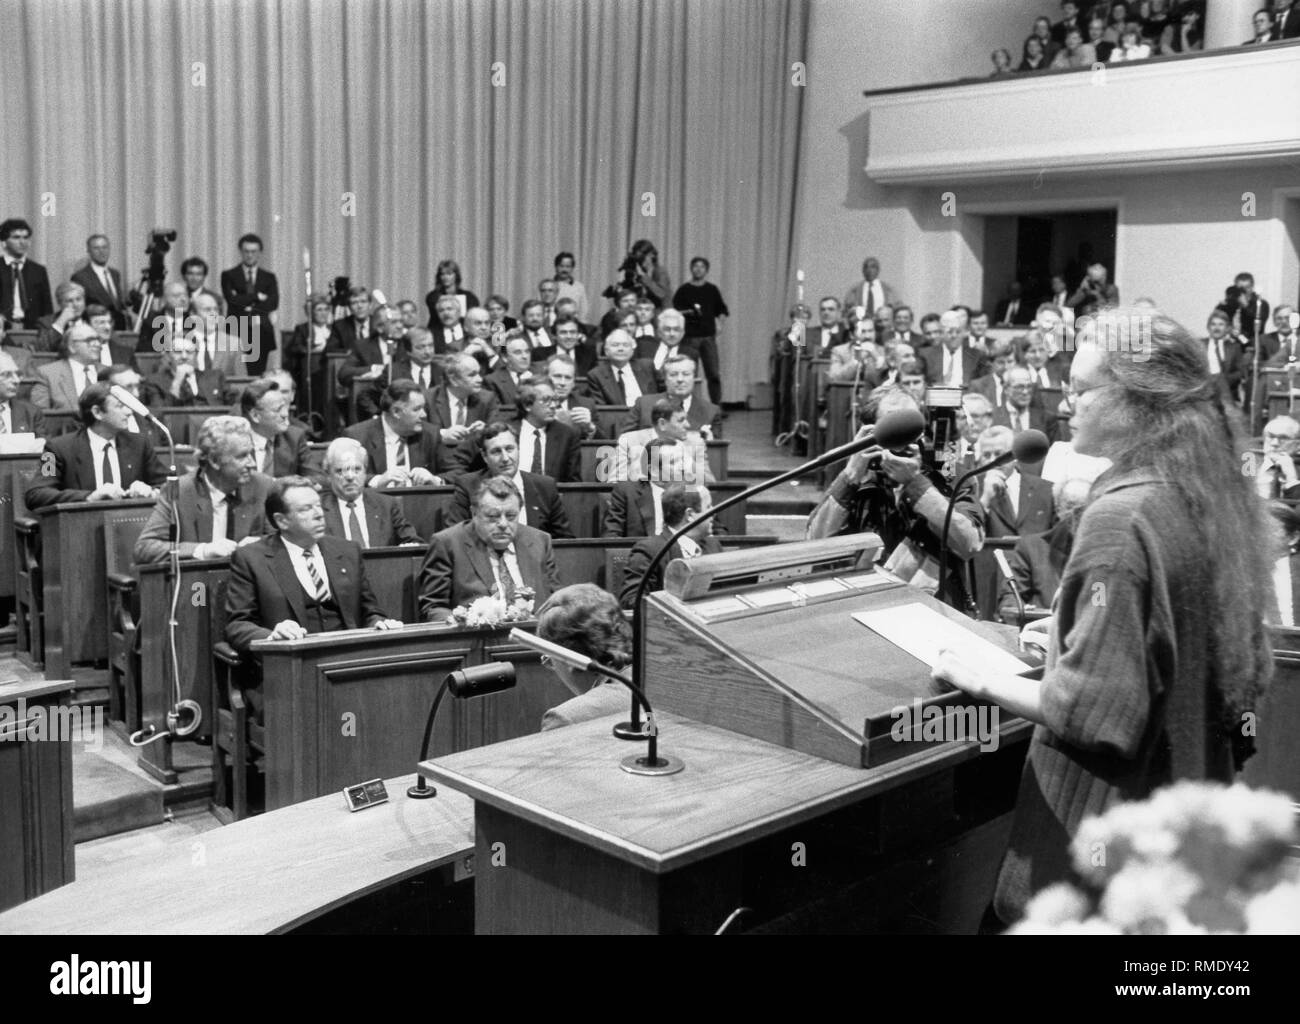 Margarete Bause bei einer Rede im Bayerischen Landtag. In der ersten Reihe in der Mitte, der Bayerische Ministerpräsident Franz Josef Strauss, rechts neben ihm, Gerold Tandler. Stockfoto